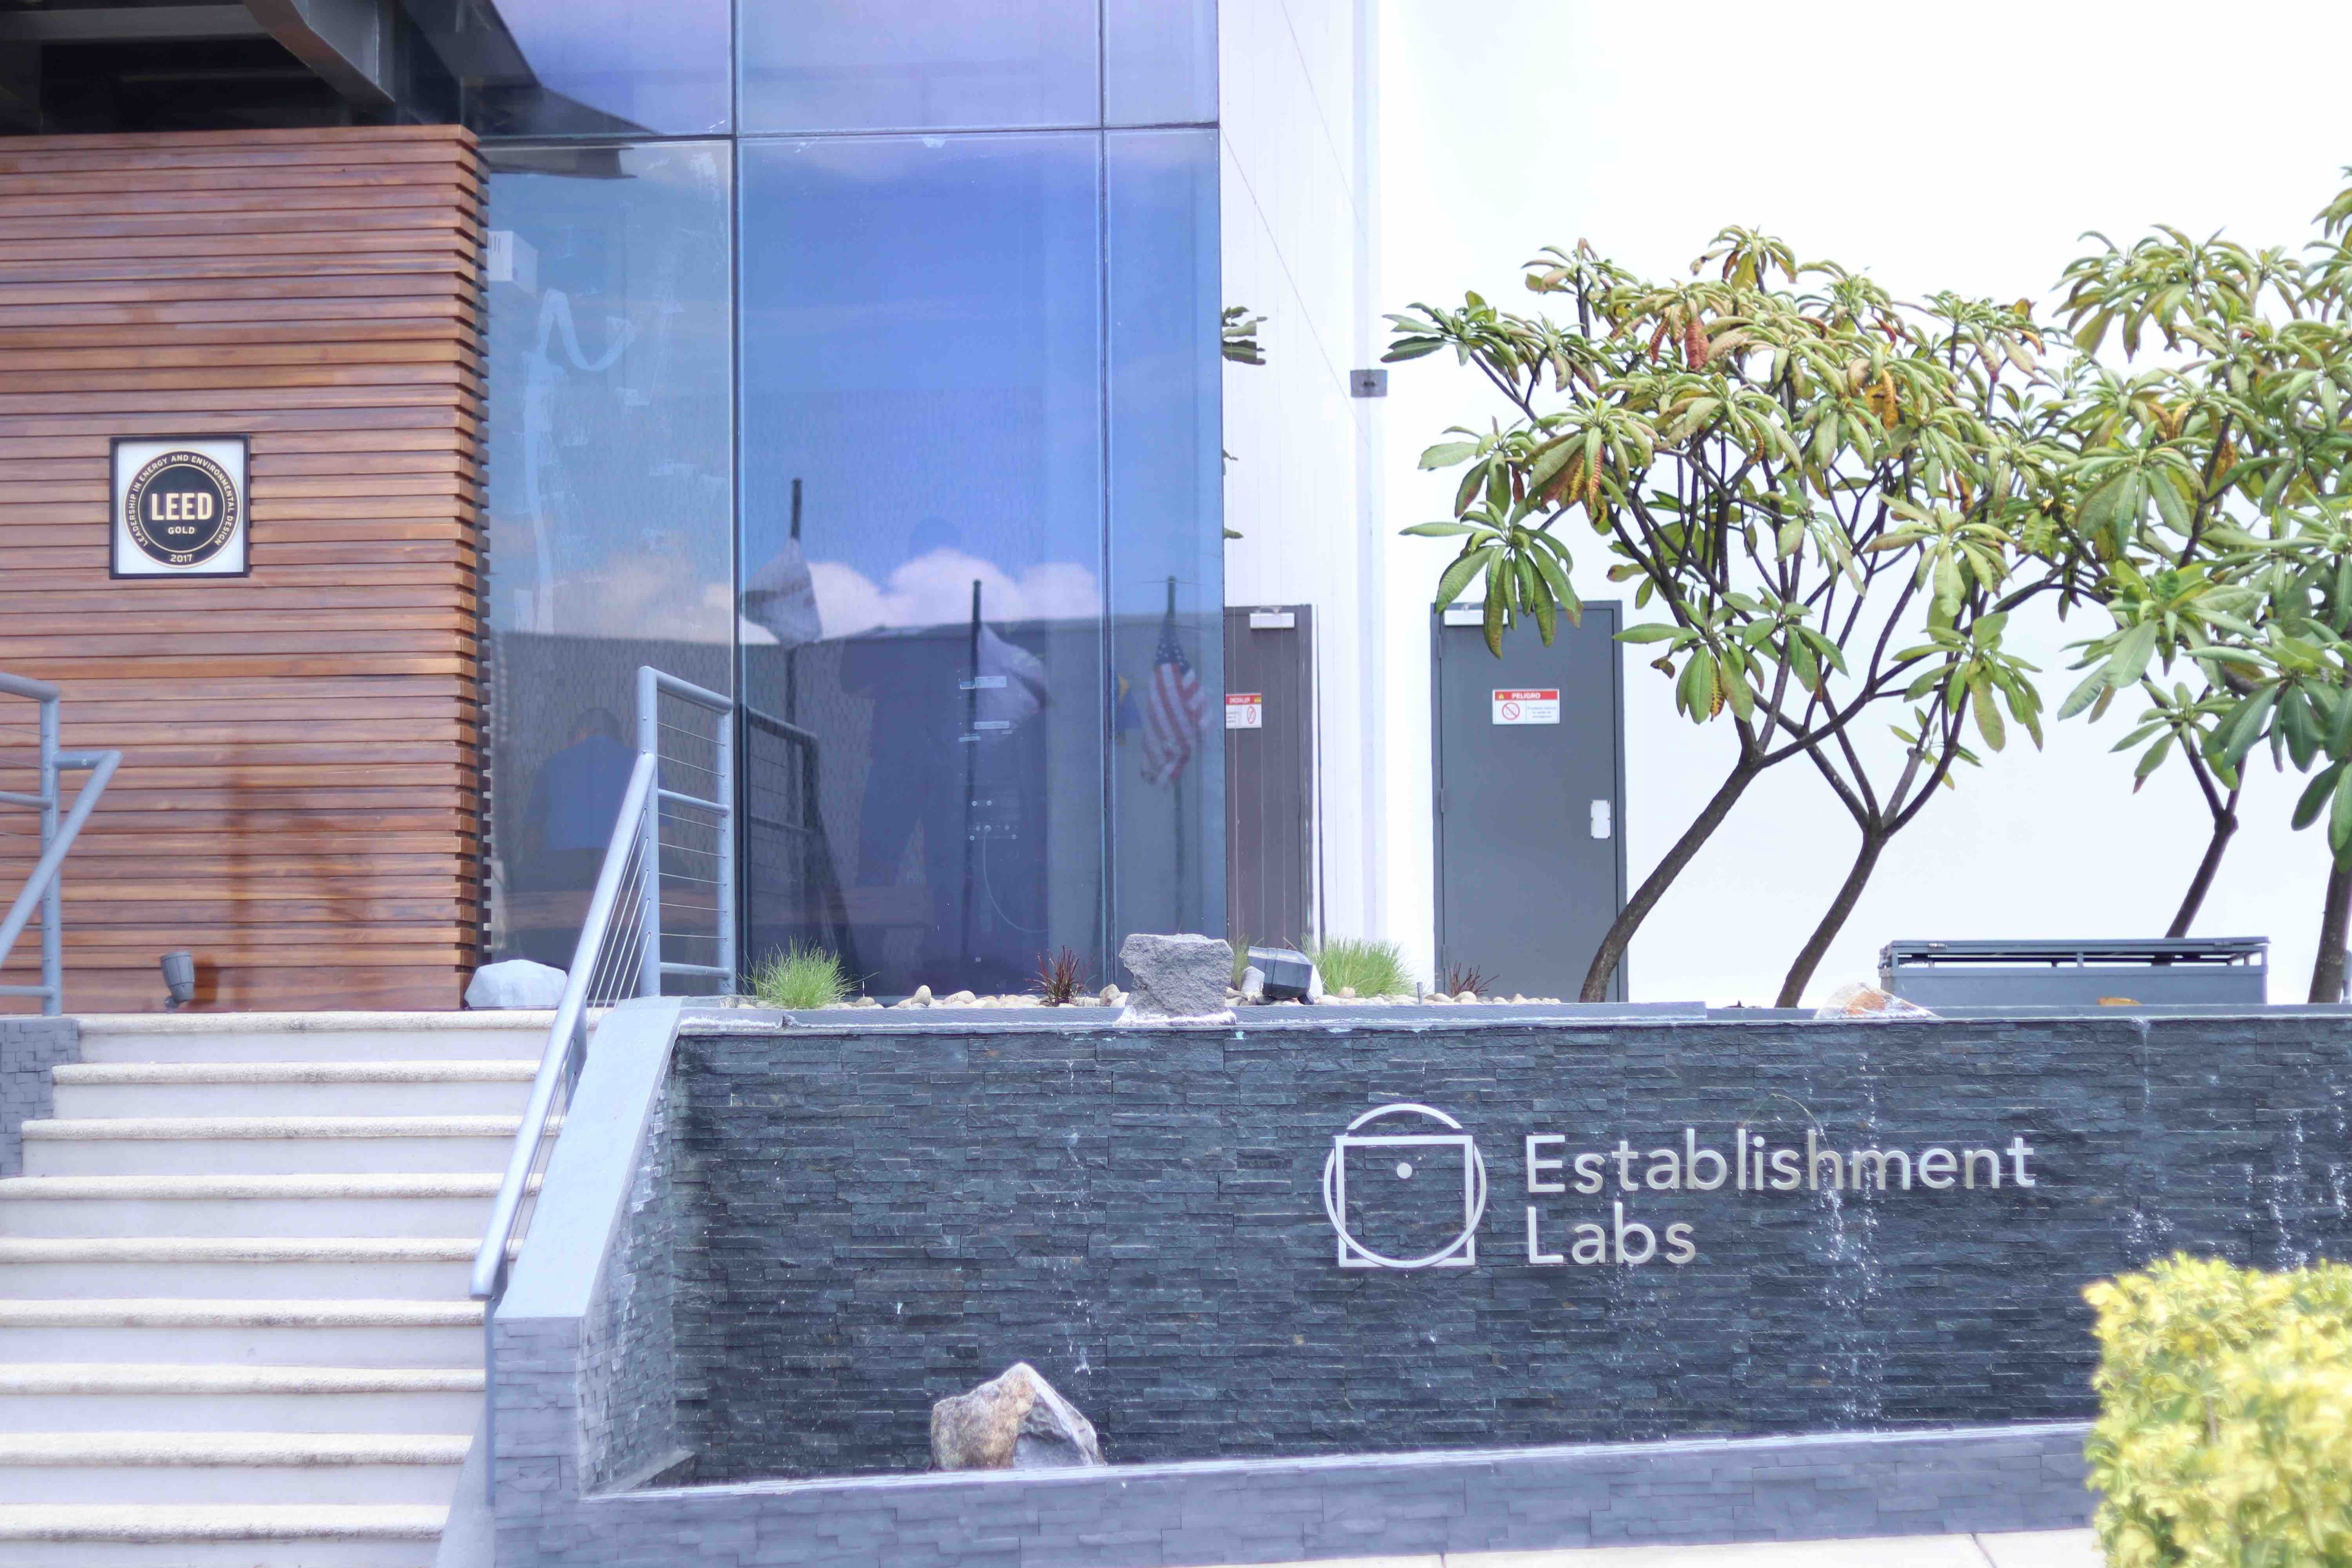 Establishment Labs inauguró su centro de innovación y manufactura, Sulàyöm el pasado 19 de julio, en Alajuela. Casi 3 meses después, recibió la aprobación de la FDA para el uso de su expansor de tejidos en Estados Unidos. 